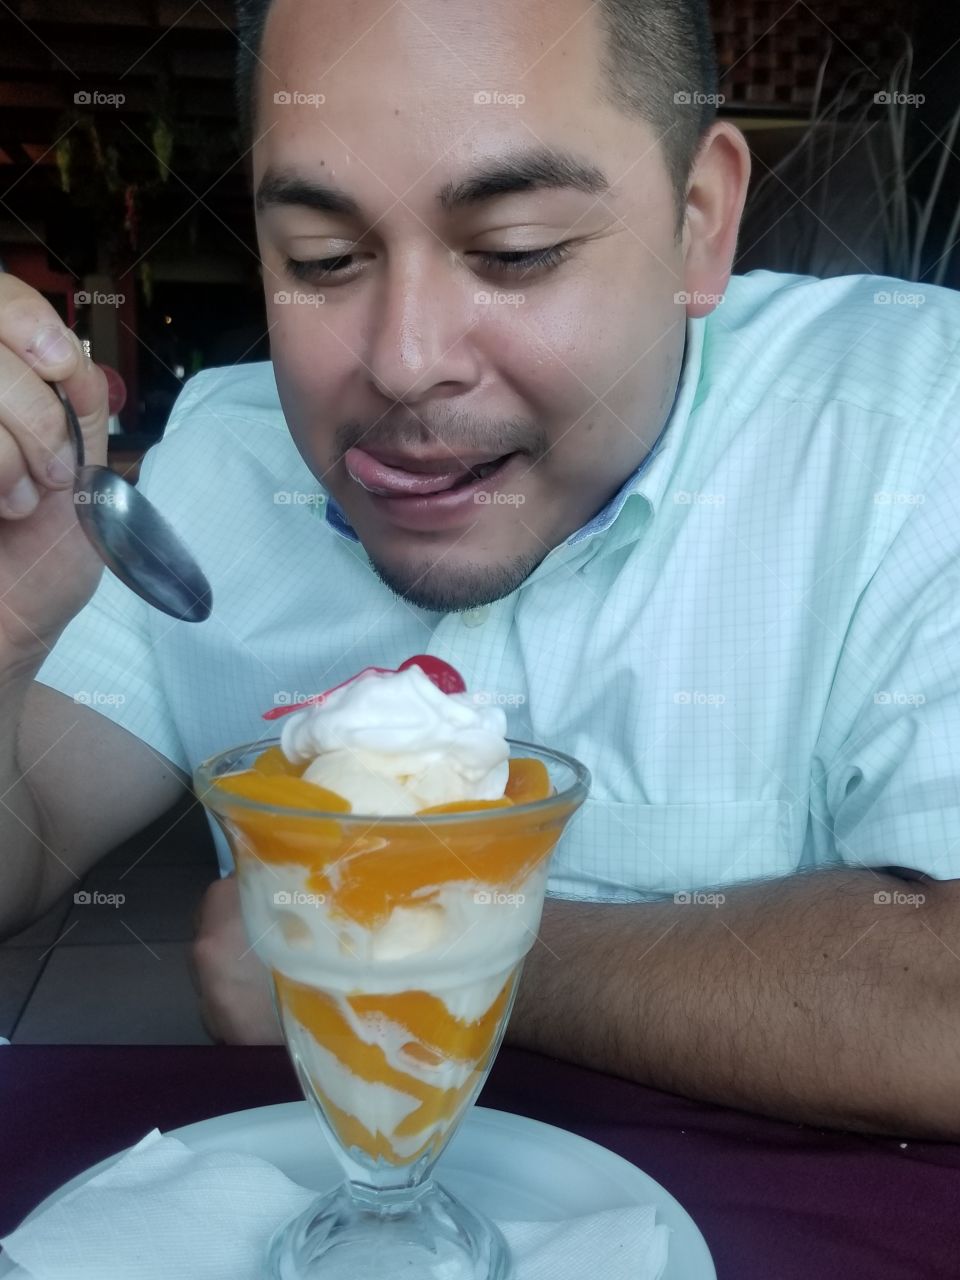 Peach Ice cream desert from El Salvador